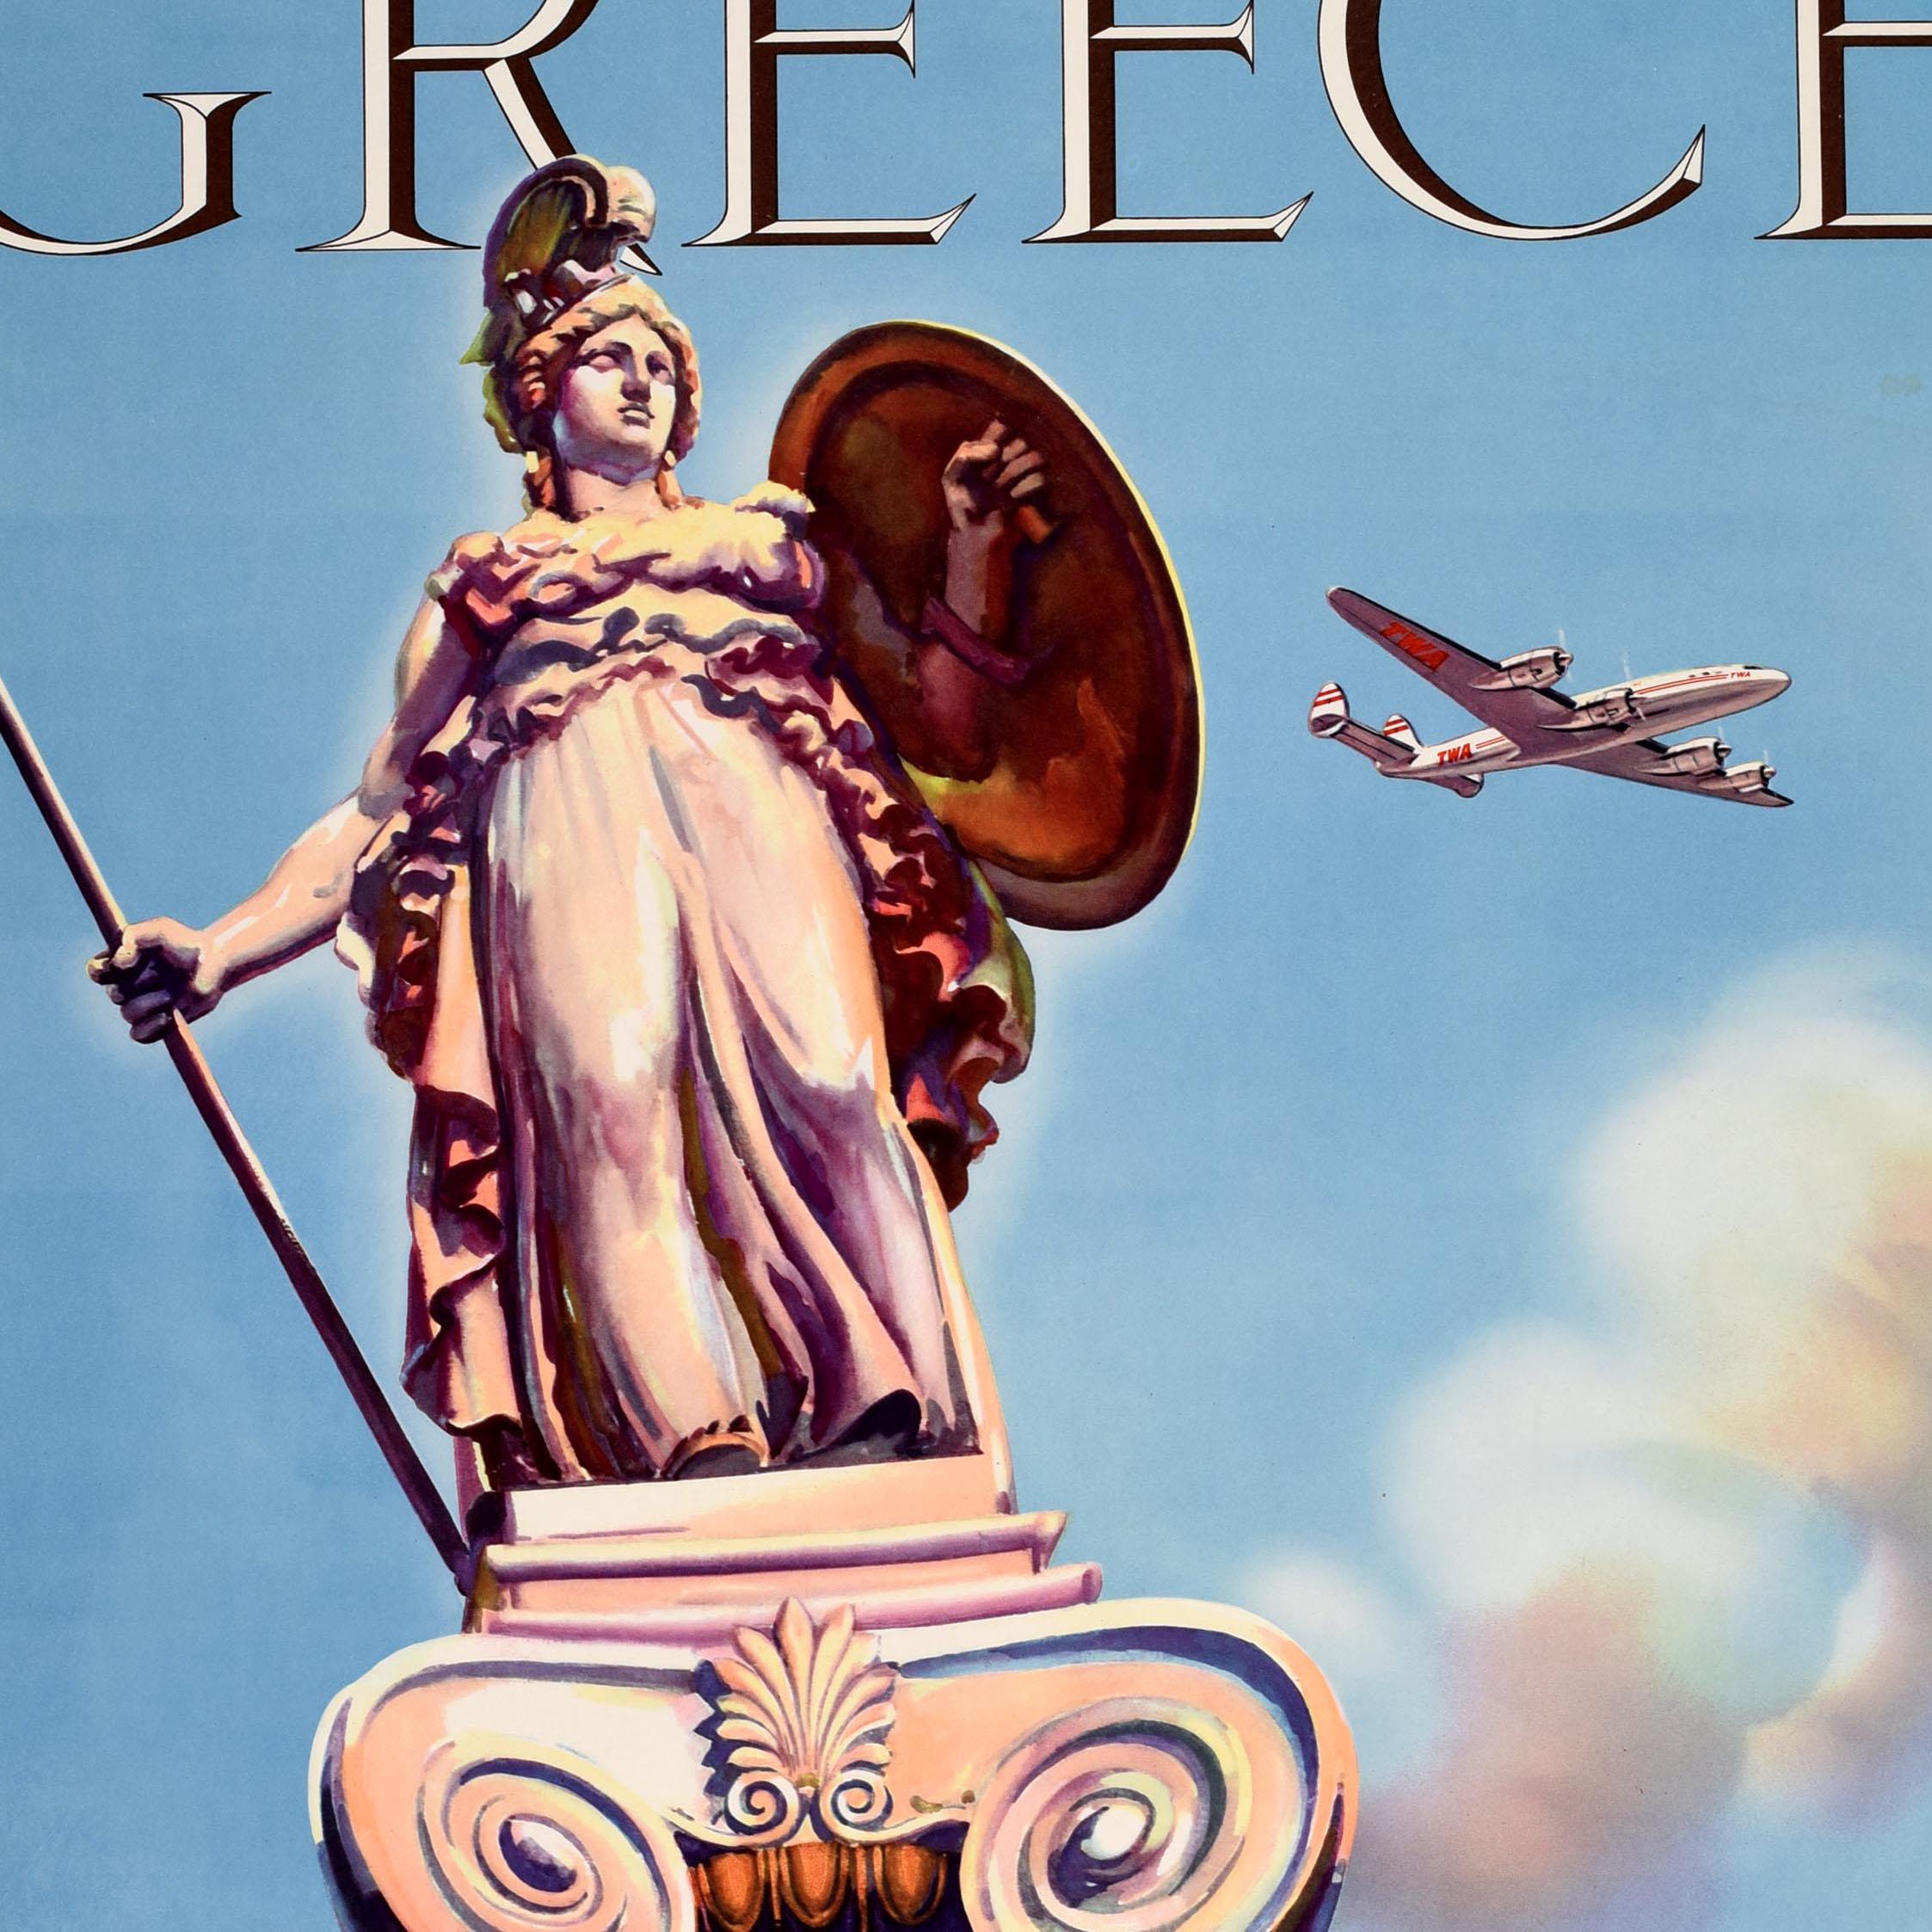 Original Vintage-Reiseplakat - Fly TWA Greece Trans World Airlines - zeigt eine Statue der antiken griechischen Göttin Athene, die ein Schild und einen Speer auf einer dekorativen Säule hält (eine von zwei Statuen in der Akademie von Athen als